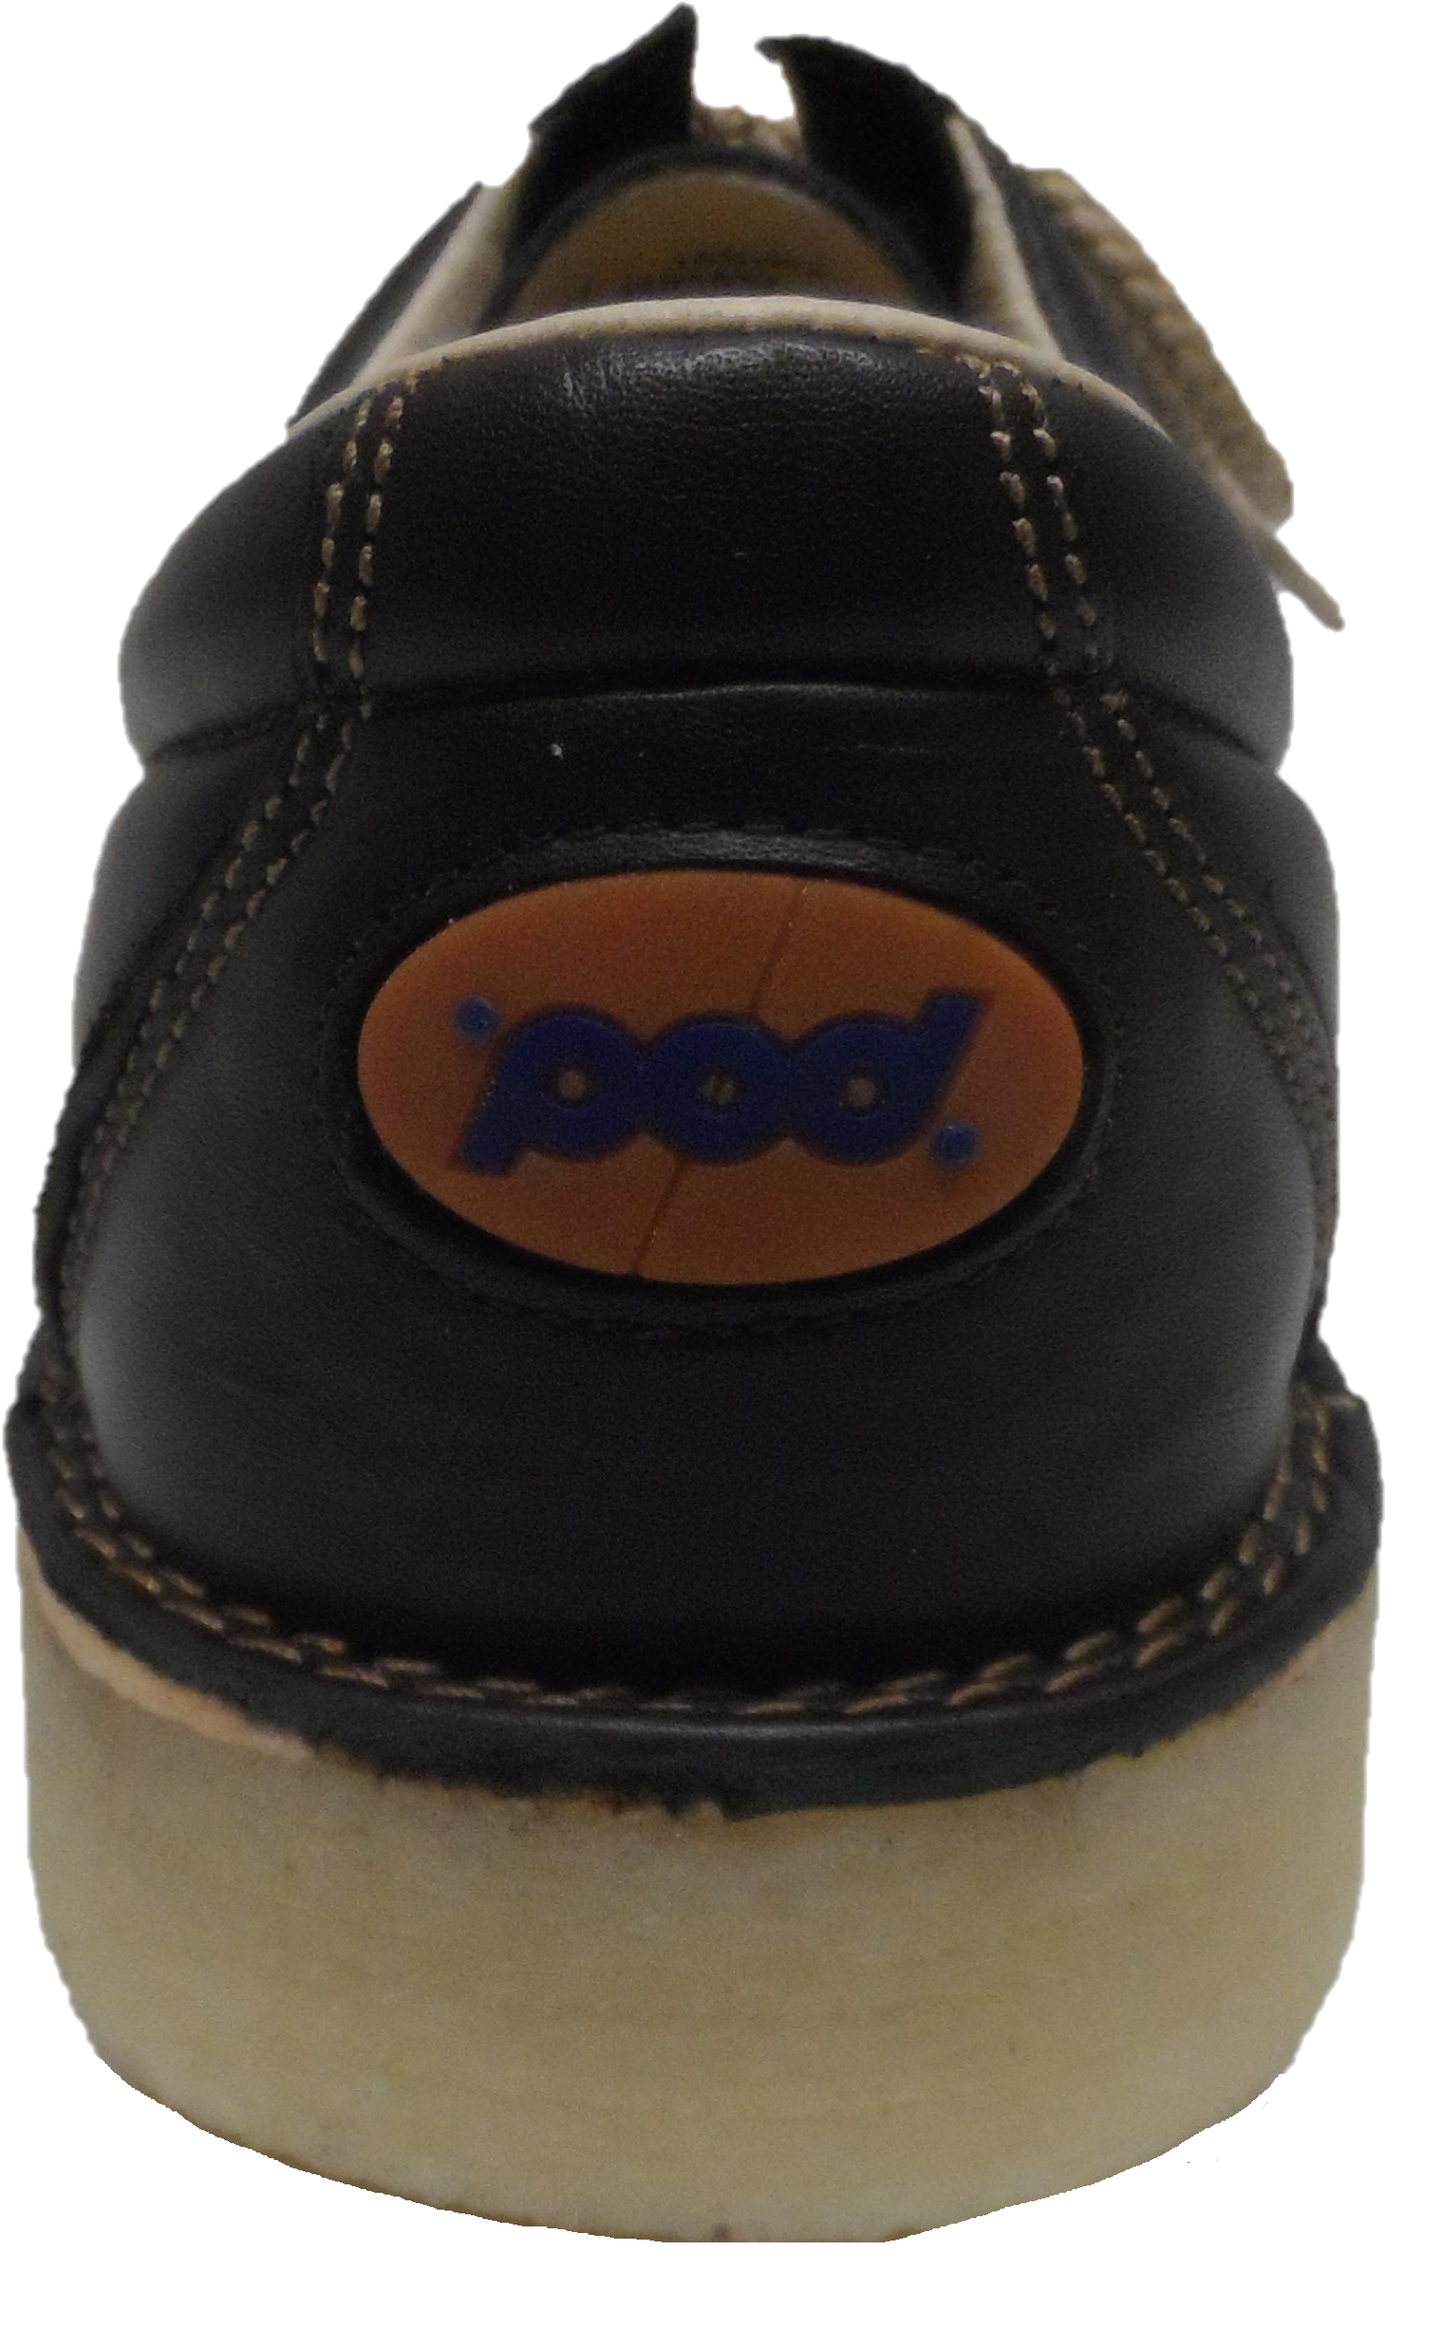 Zapatos Pod Original jagger marrón retro mod de cuero